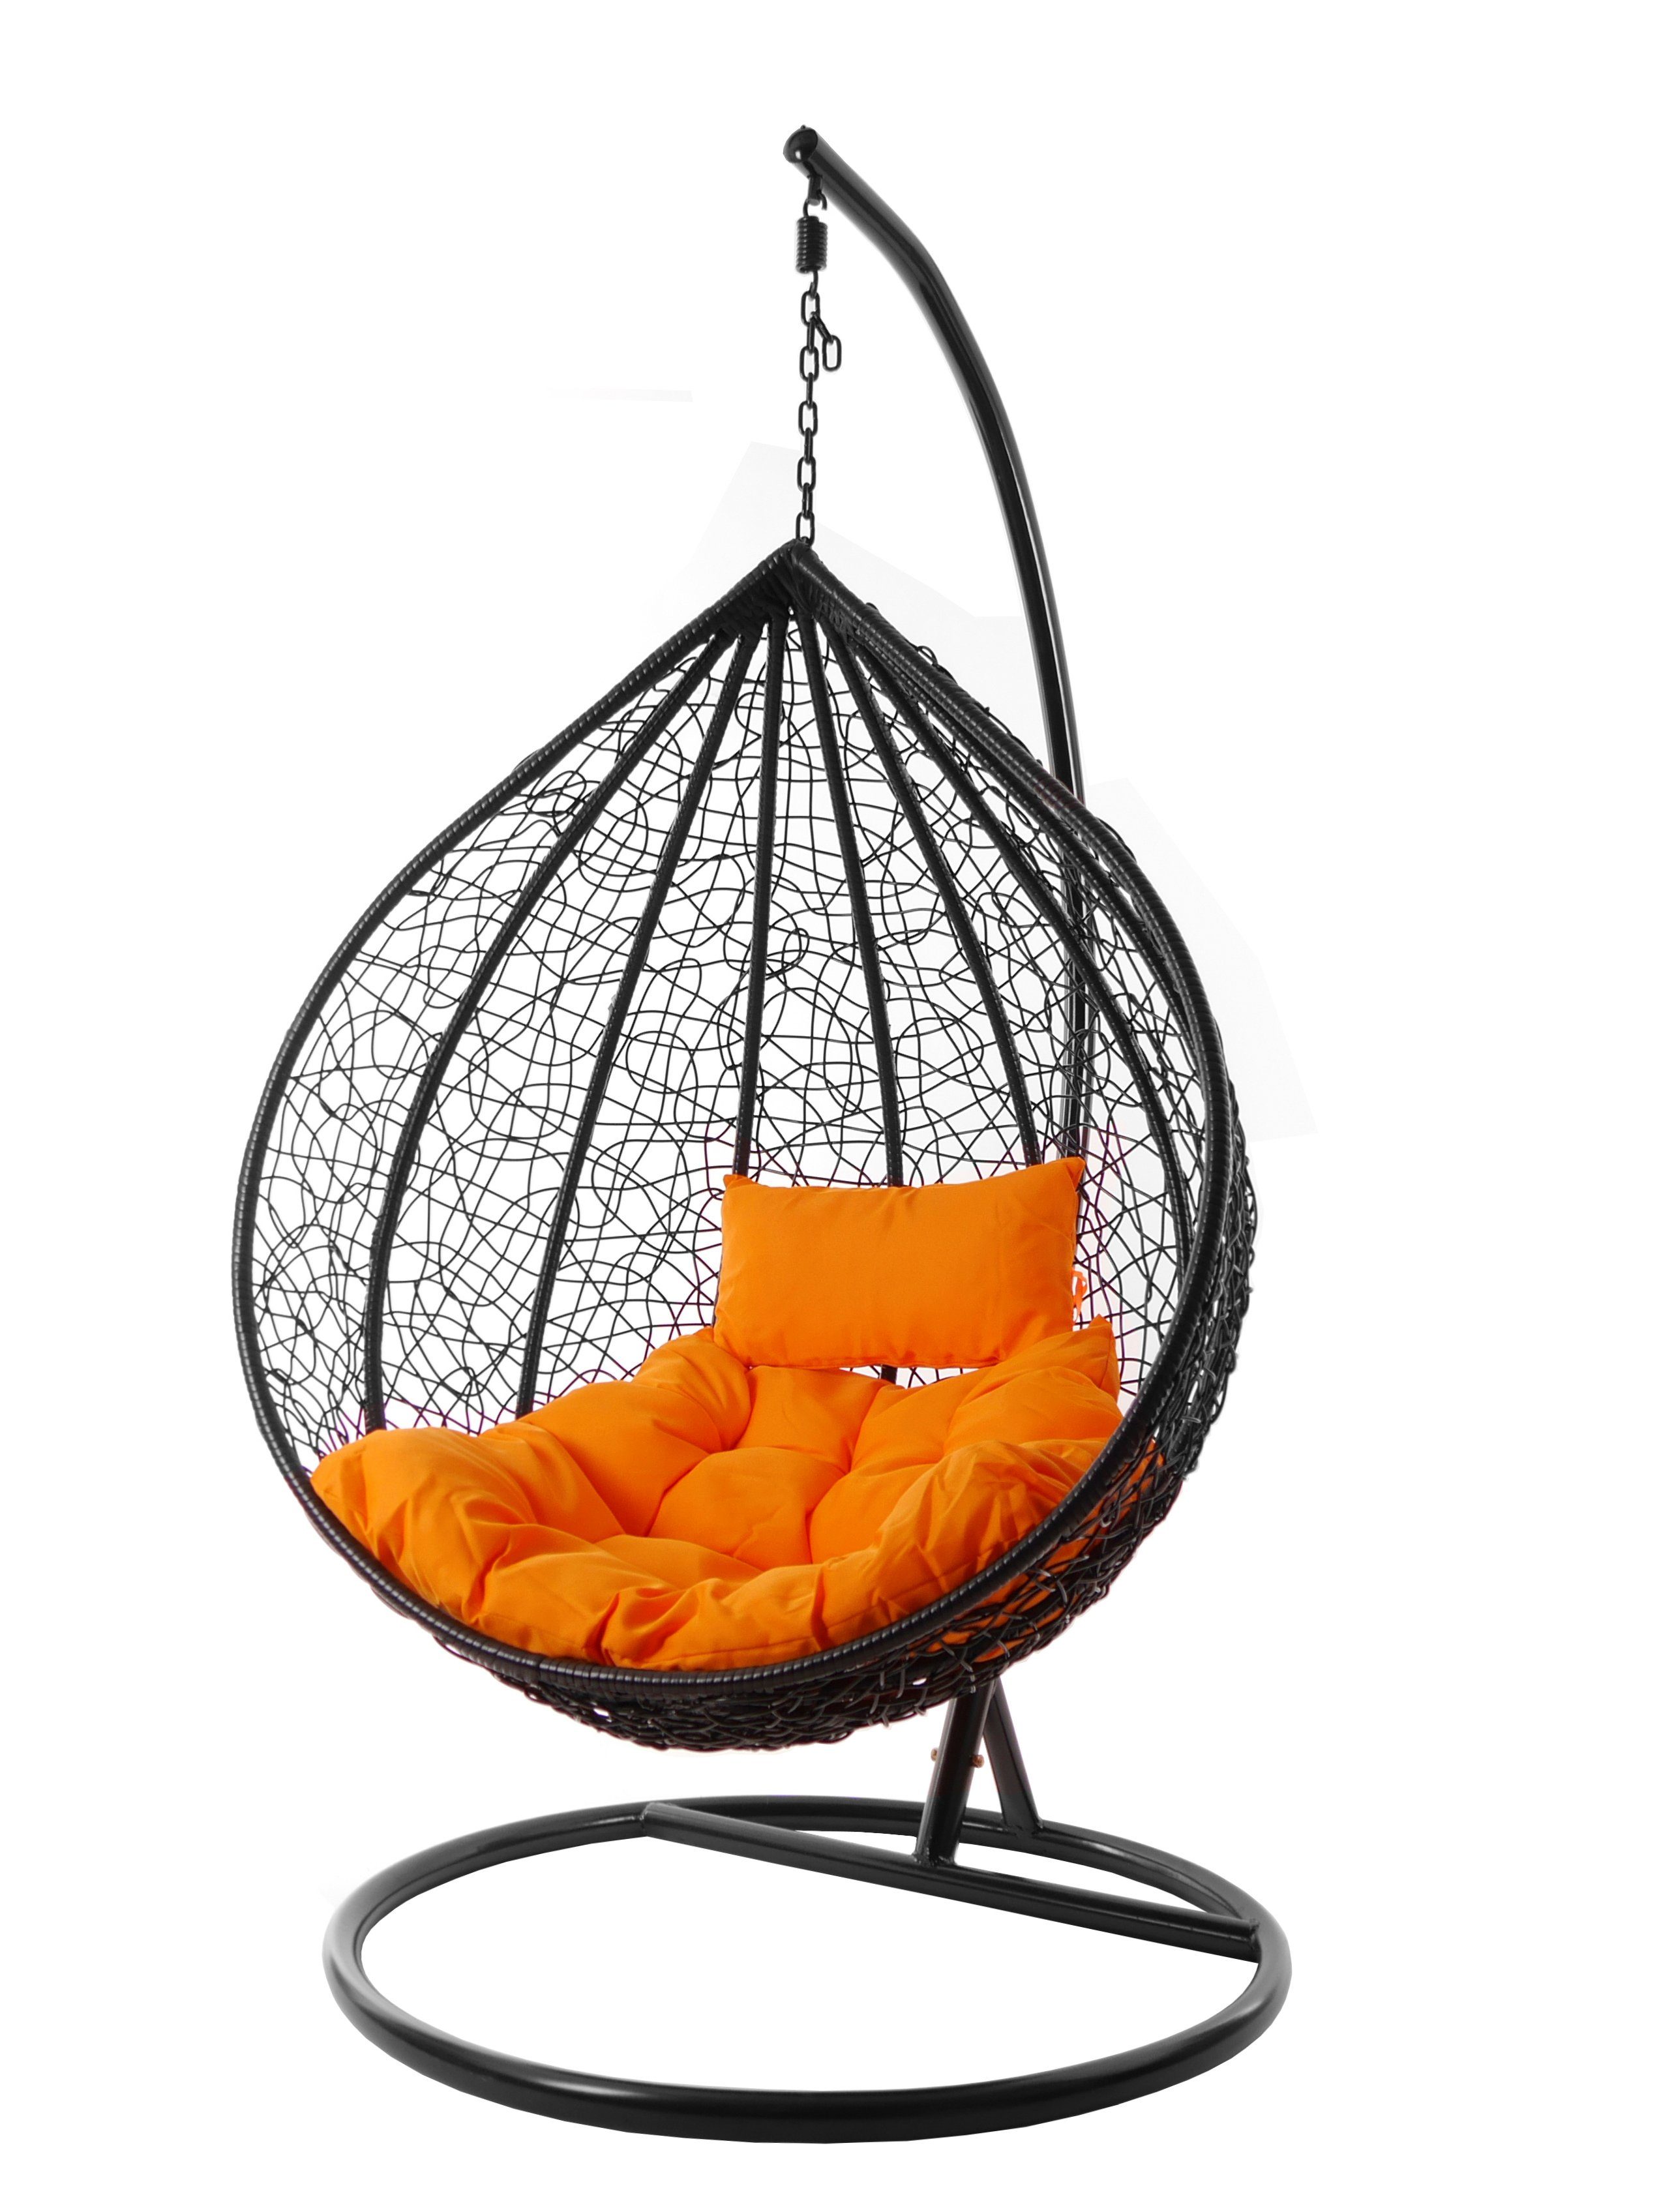 KIDEO Hängesessel Hängesessel MANACOR schwarz, edles schwarz, moderner Swing Chair, Schwebesessel inklusive Gestell und Kissen orange (3030 tangerine)